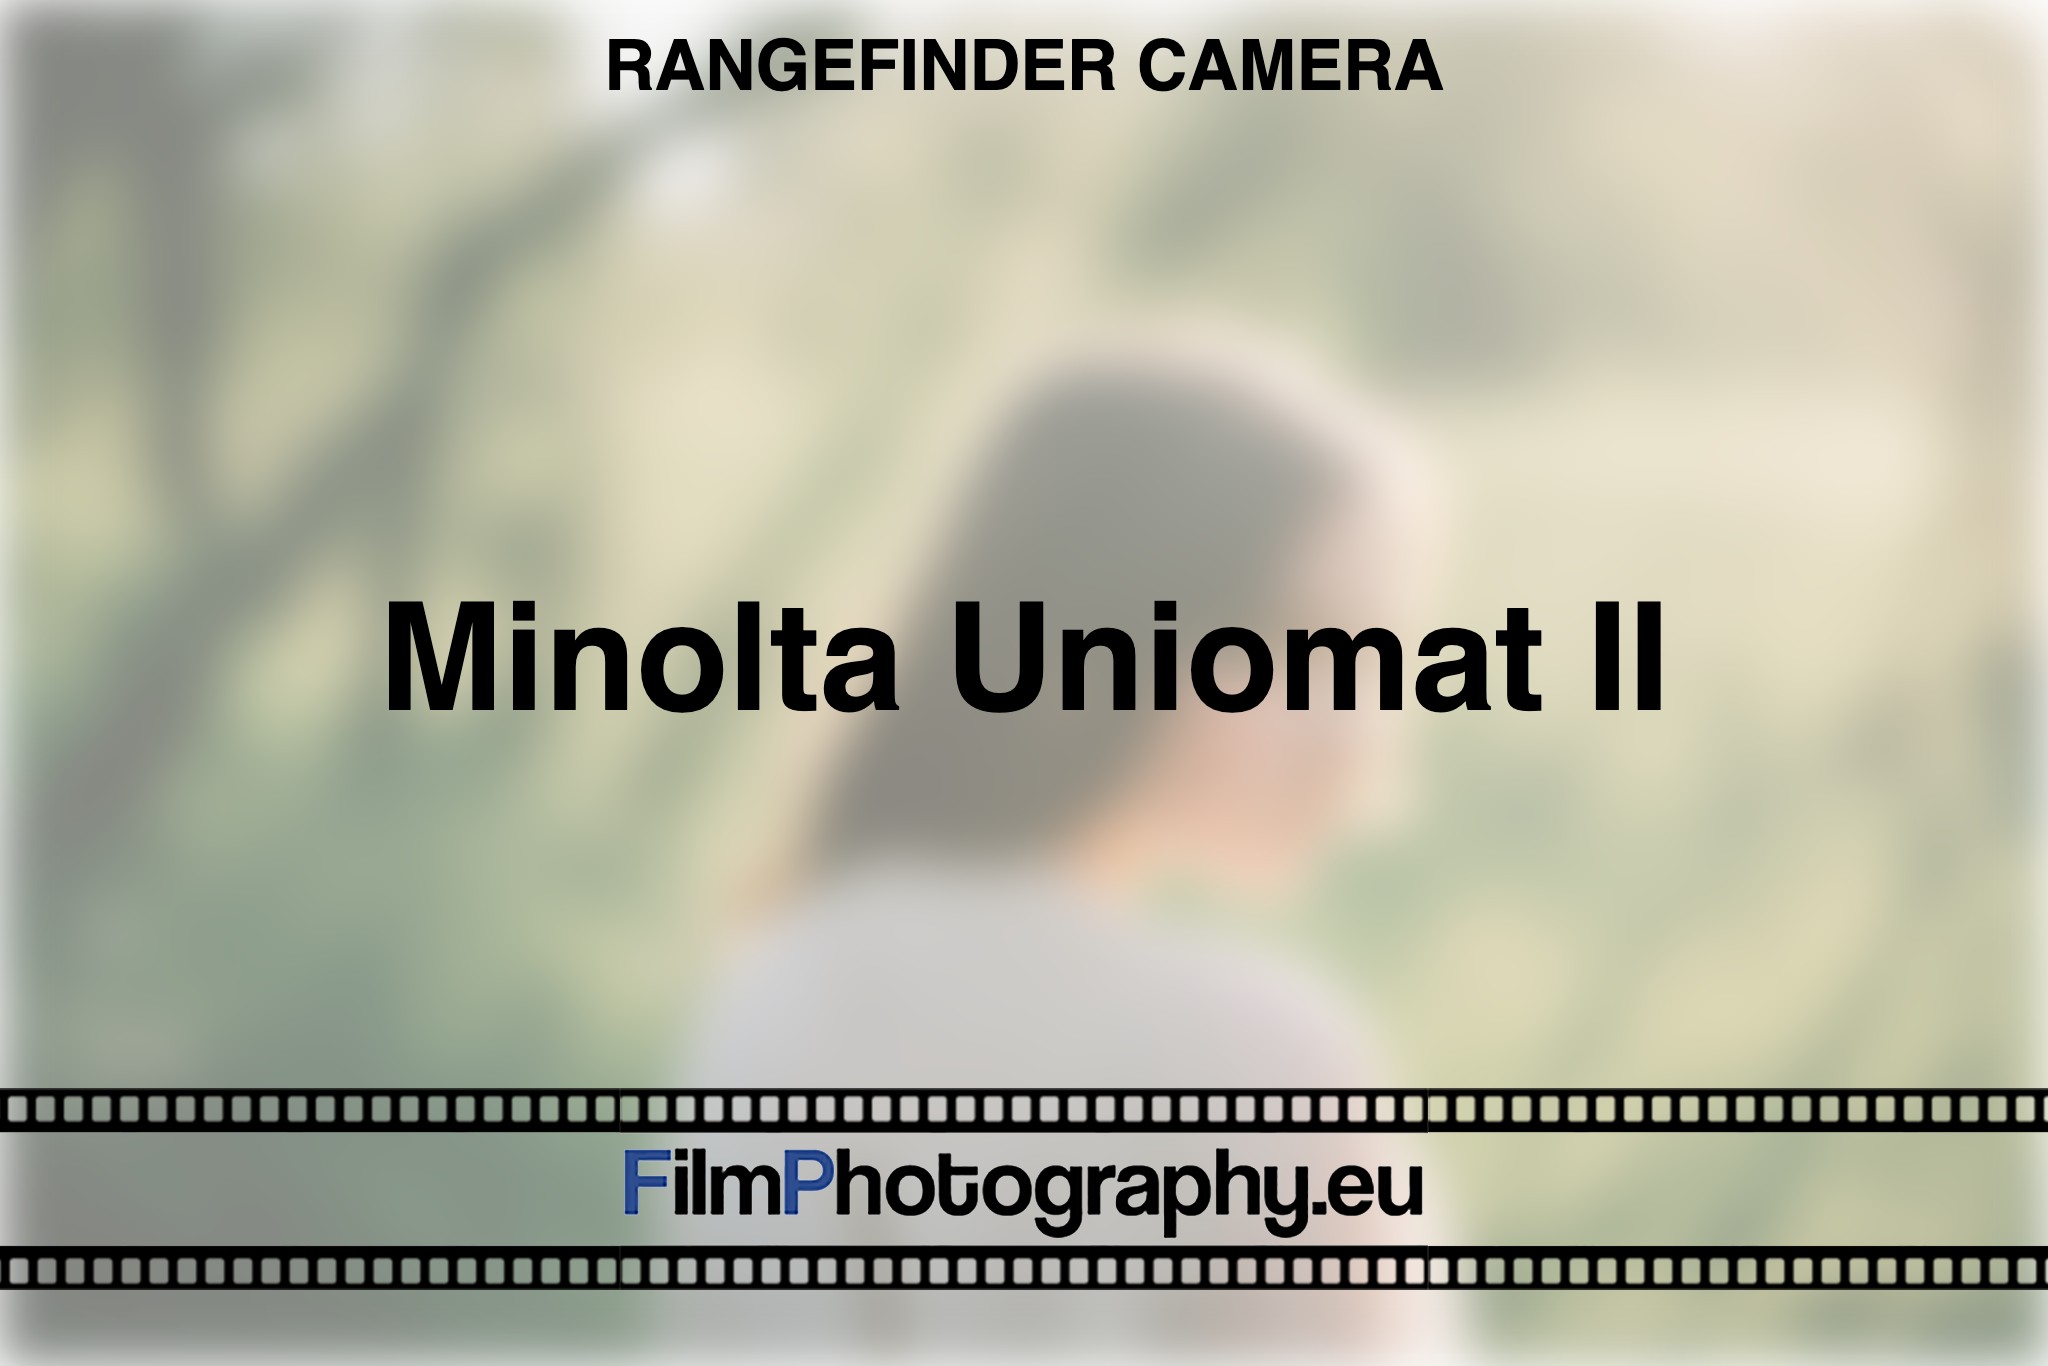 minolta-uniomat-ii-rangefinder-camera-bnv